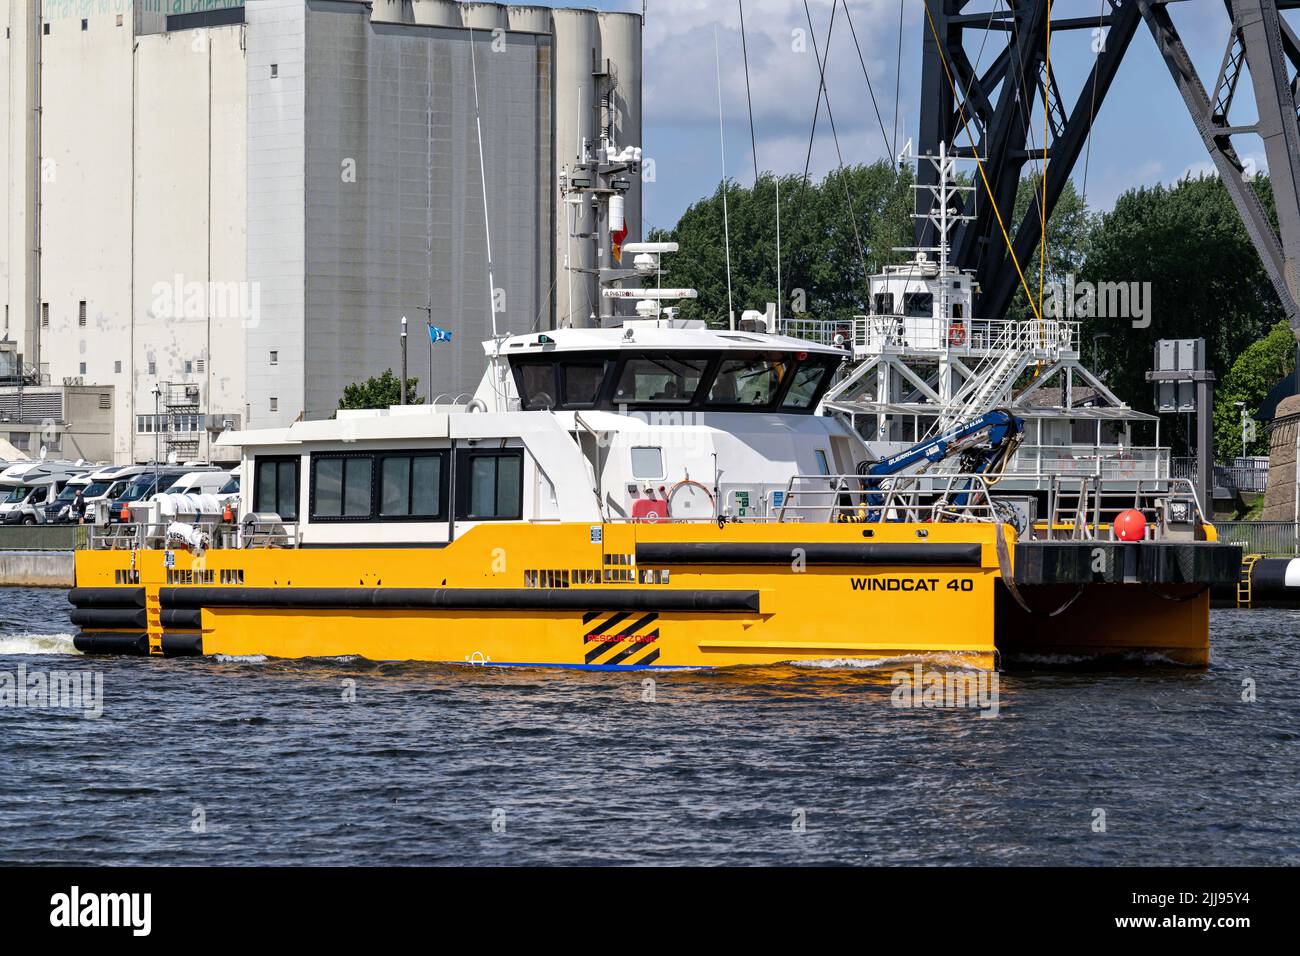 crew transfer vessel WINDCAT 40 in the Kiel Canal Stock Photo